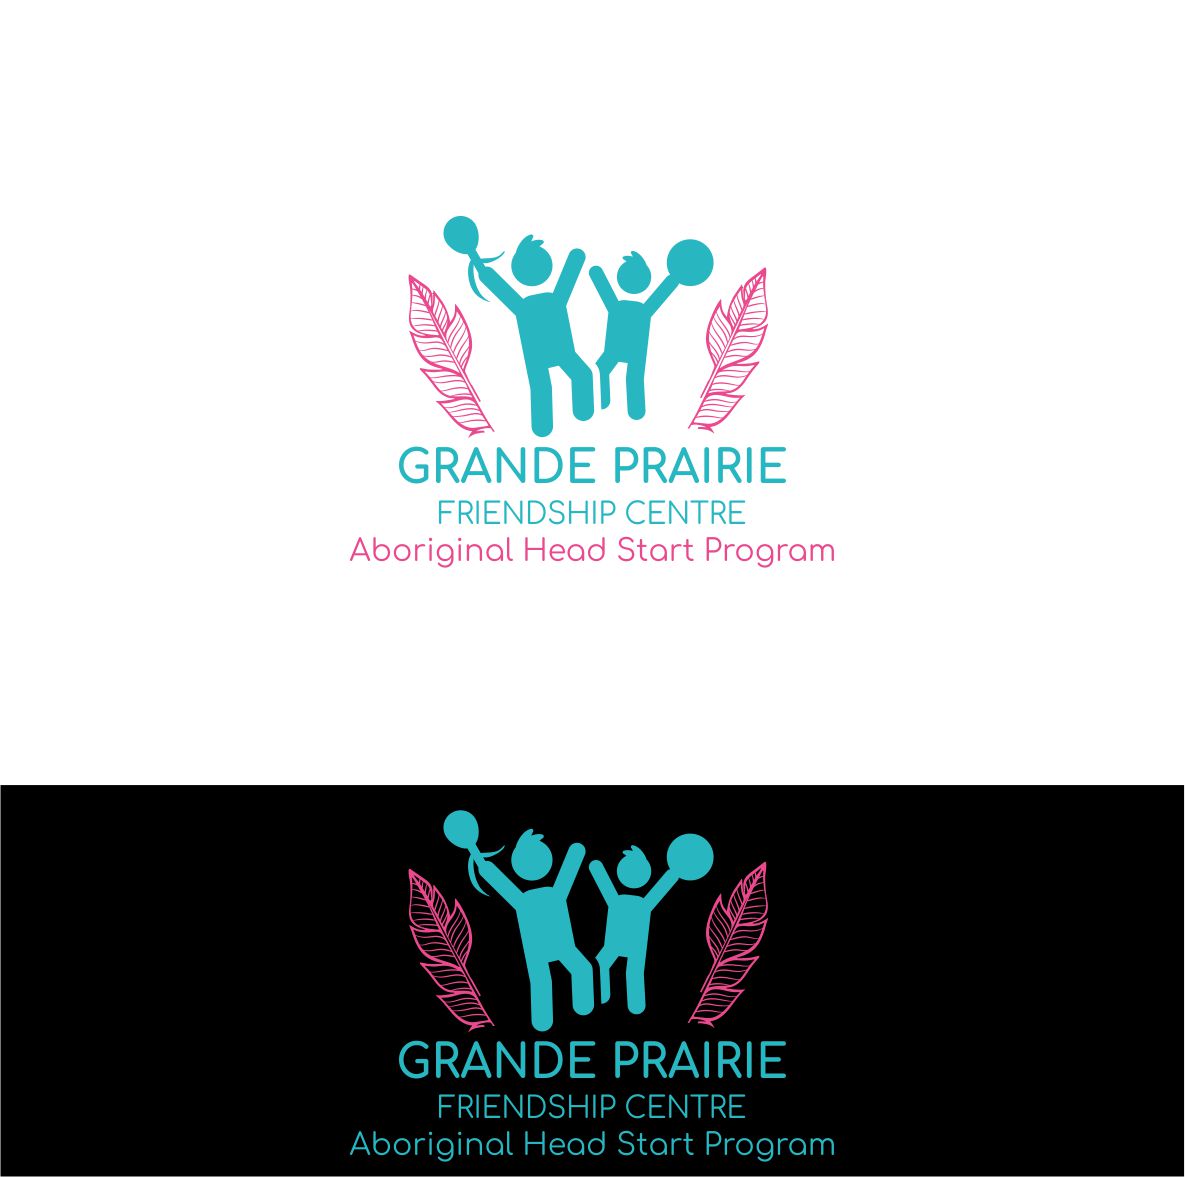 Logo Design entry 1382683 submitted by altas desain to the Logo Design for Grande Prairie Friendship Centre Aboriginal Head Start Program (www.facebook.com/GPFCAboriginalHeadStart) run by SoulEssentials